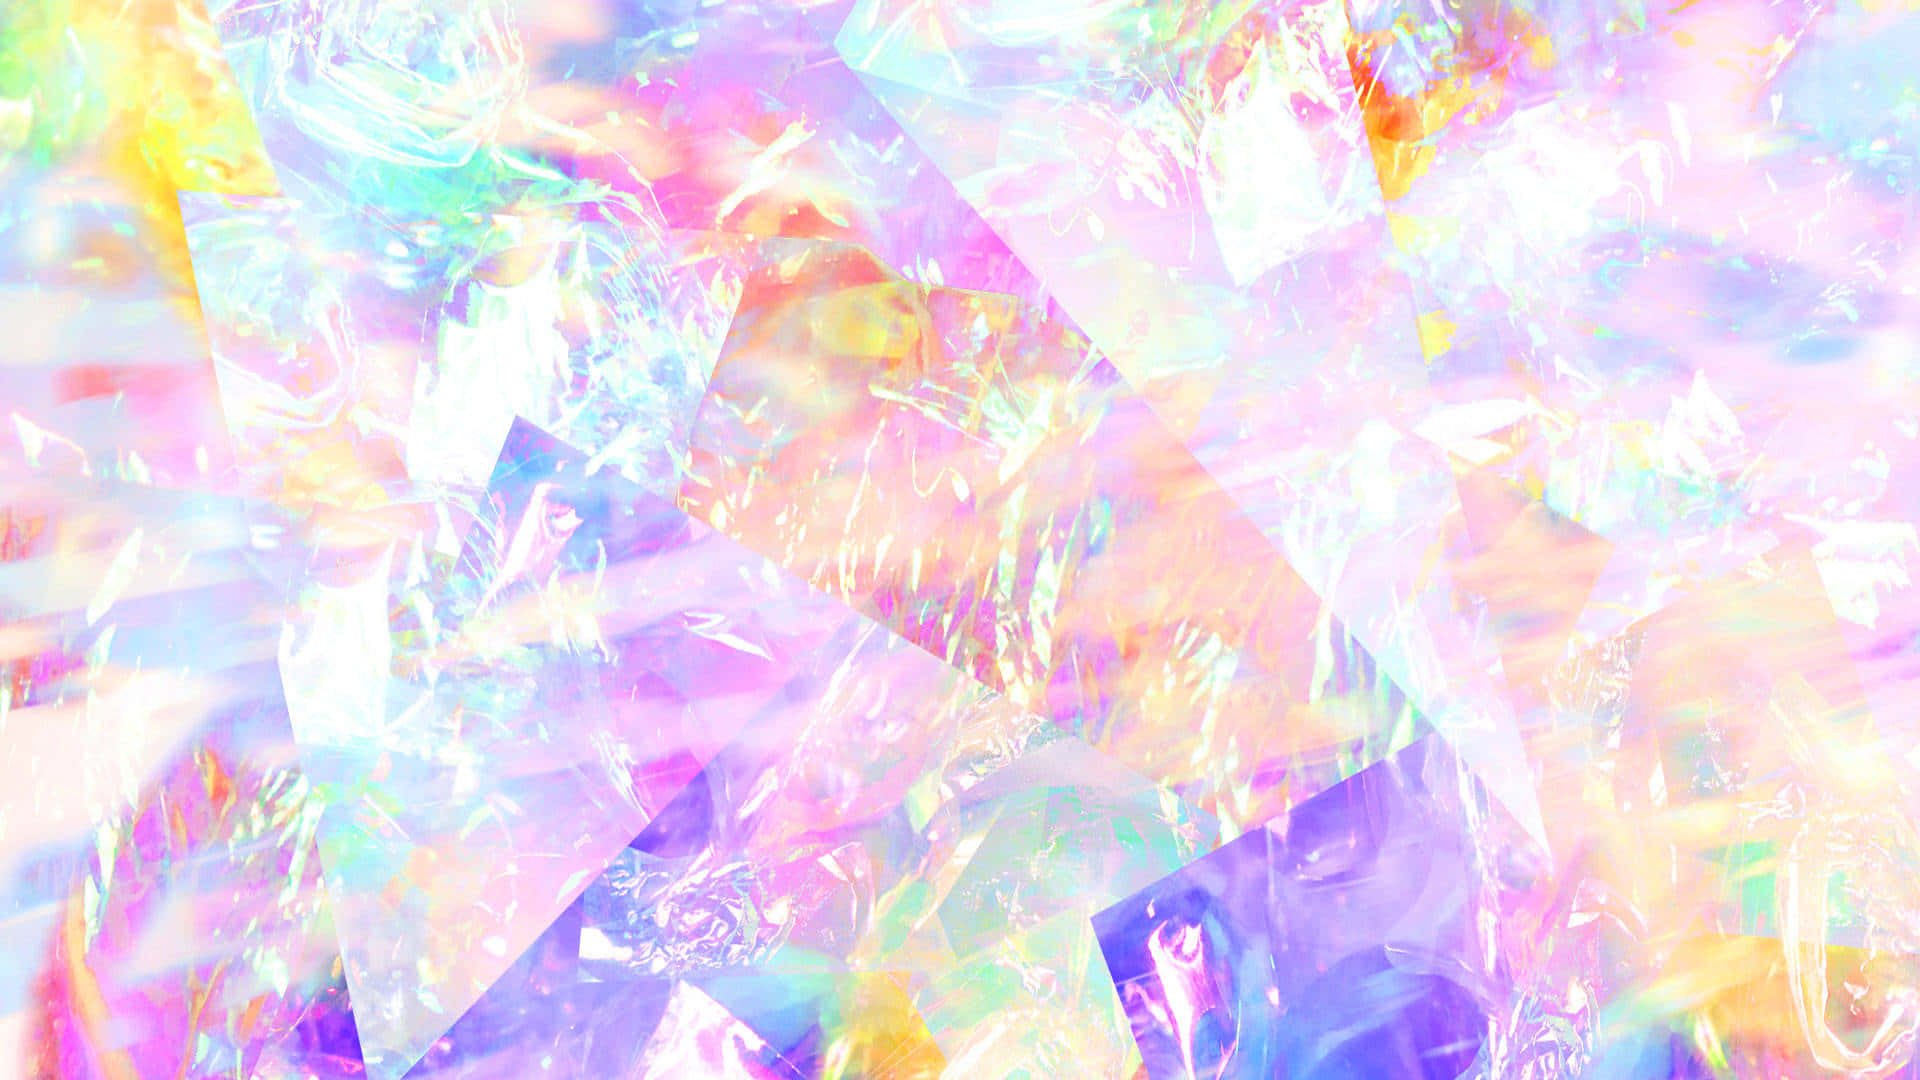 Padrõesgeométricos Rosas, Roxos E Azuis Formam Um Cristal De Tons Pastel Deslumbrante E Hipnotizante Para Wallpaper De Computador Ou Celular. Papel de Parede